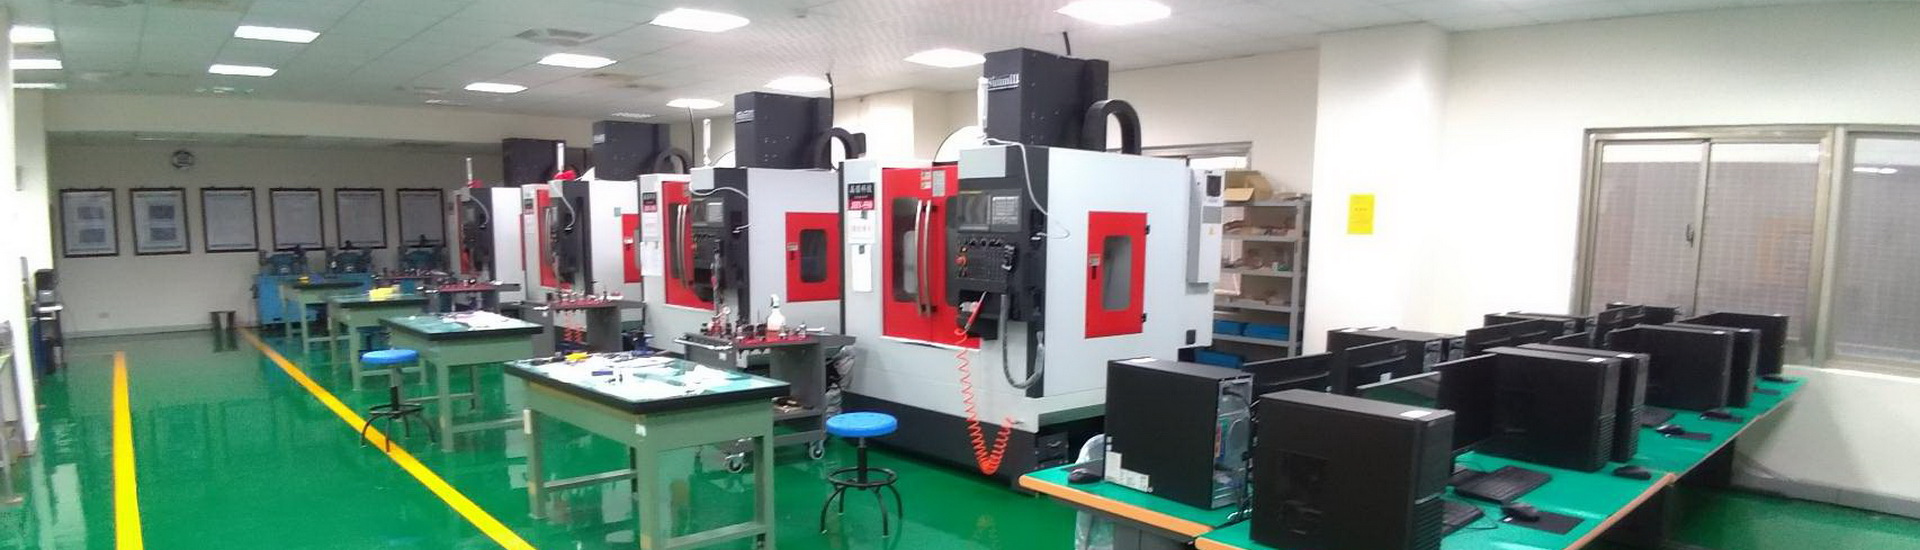 科技學院-CNC精密加工實驗室